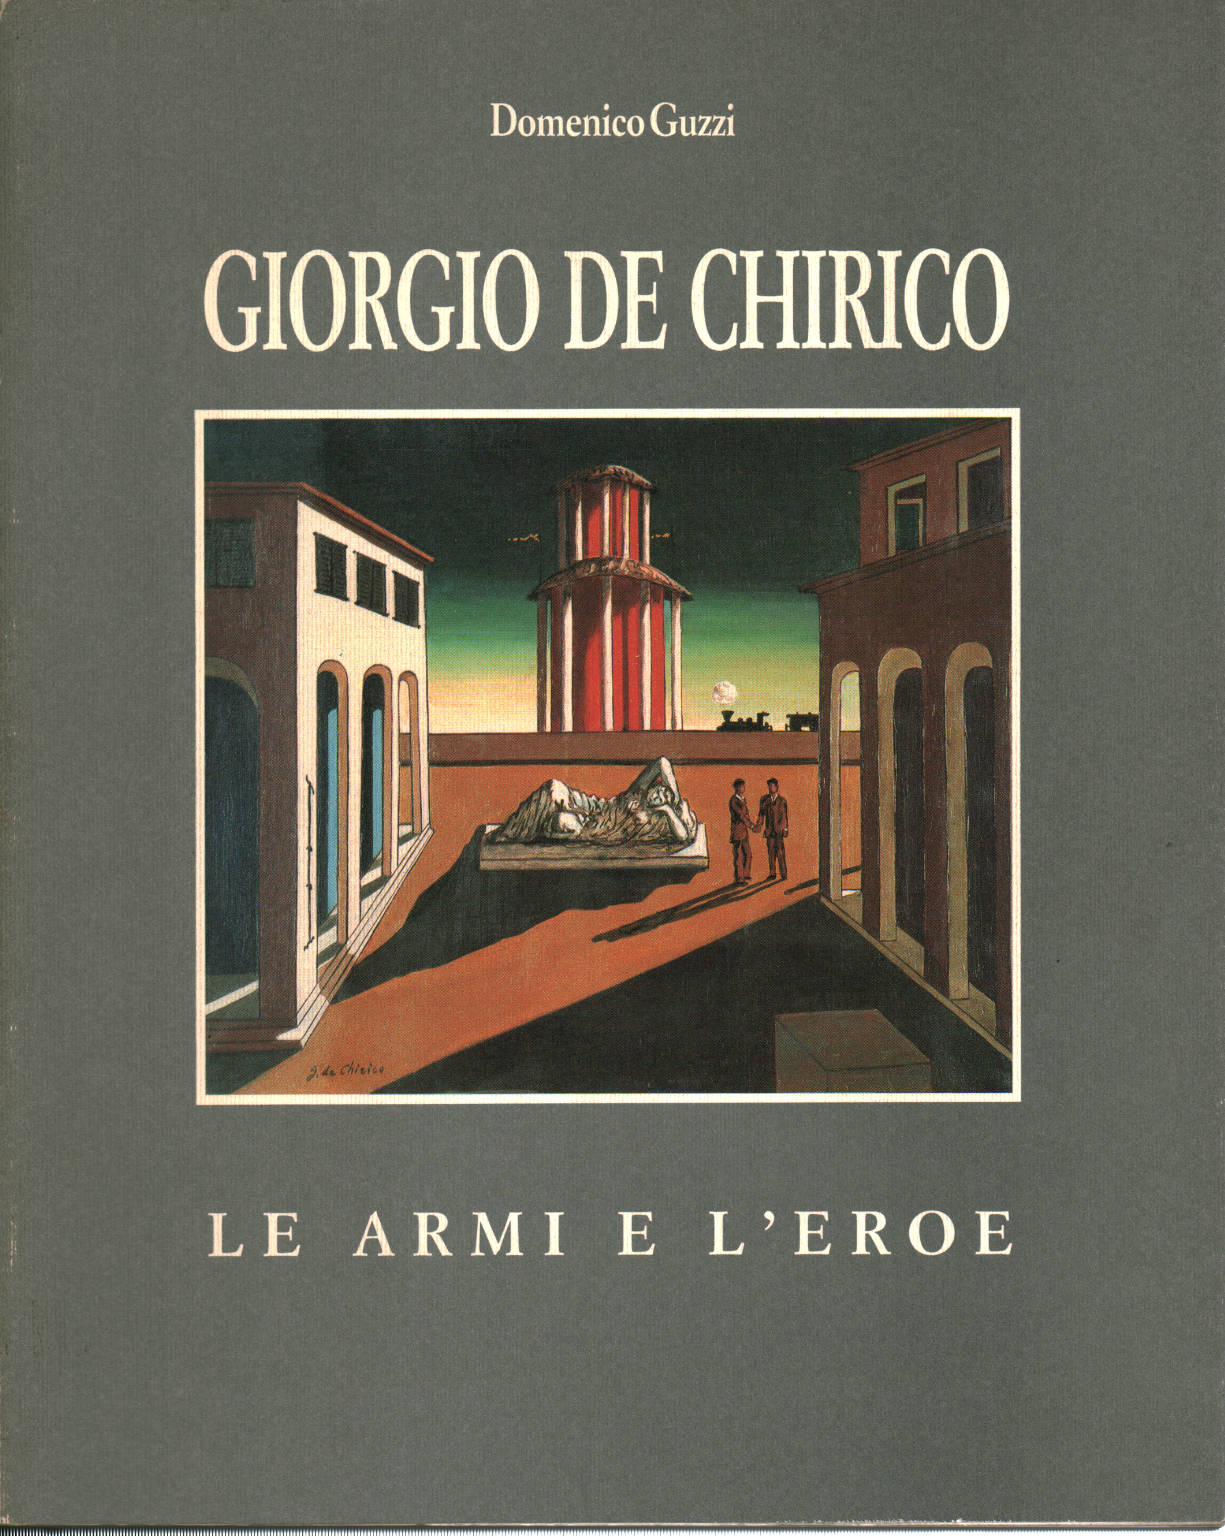 Giorgio de Chirico le armi e l'eroe, Domenico Guzzi